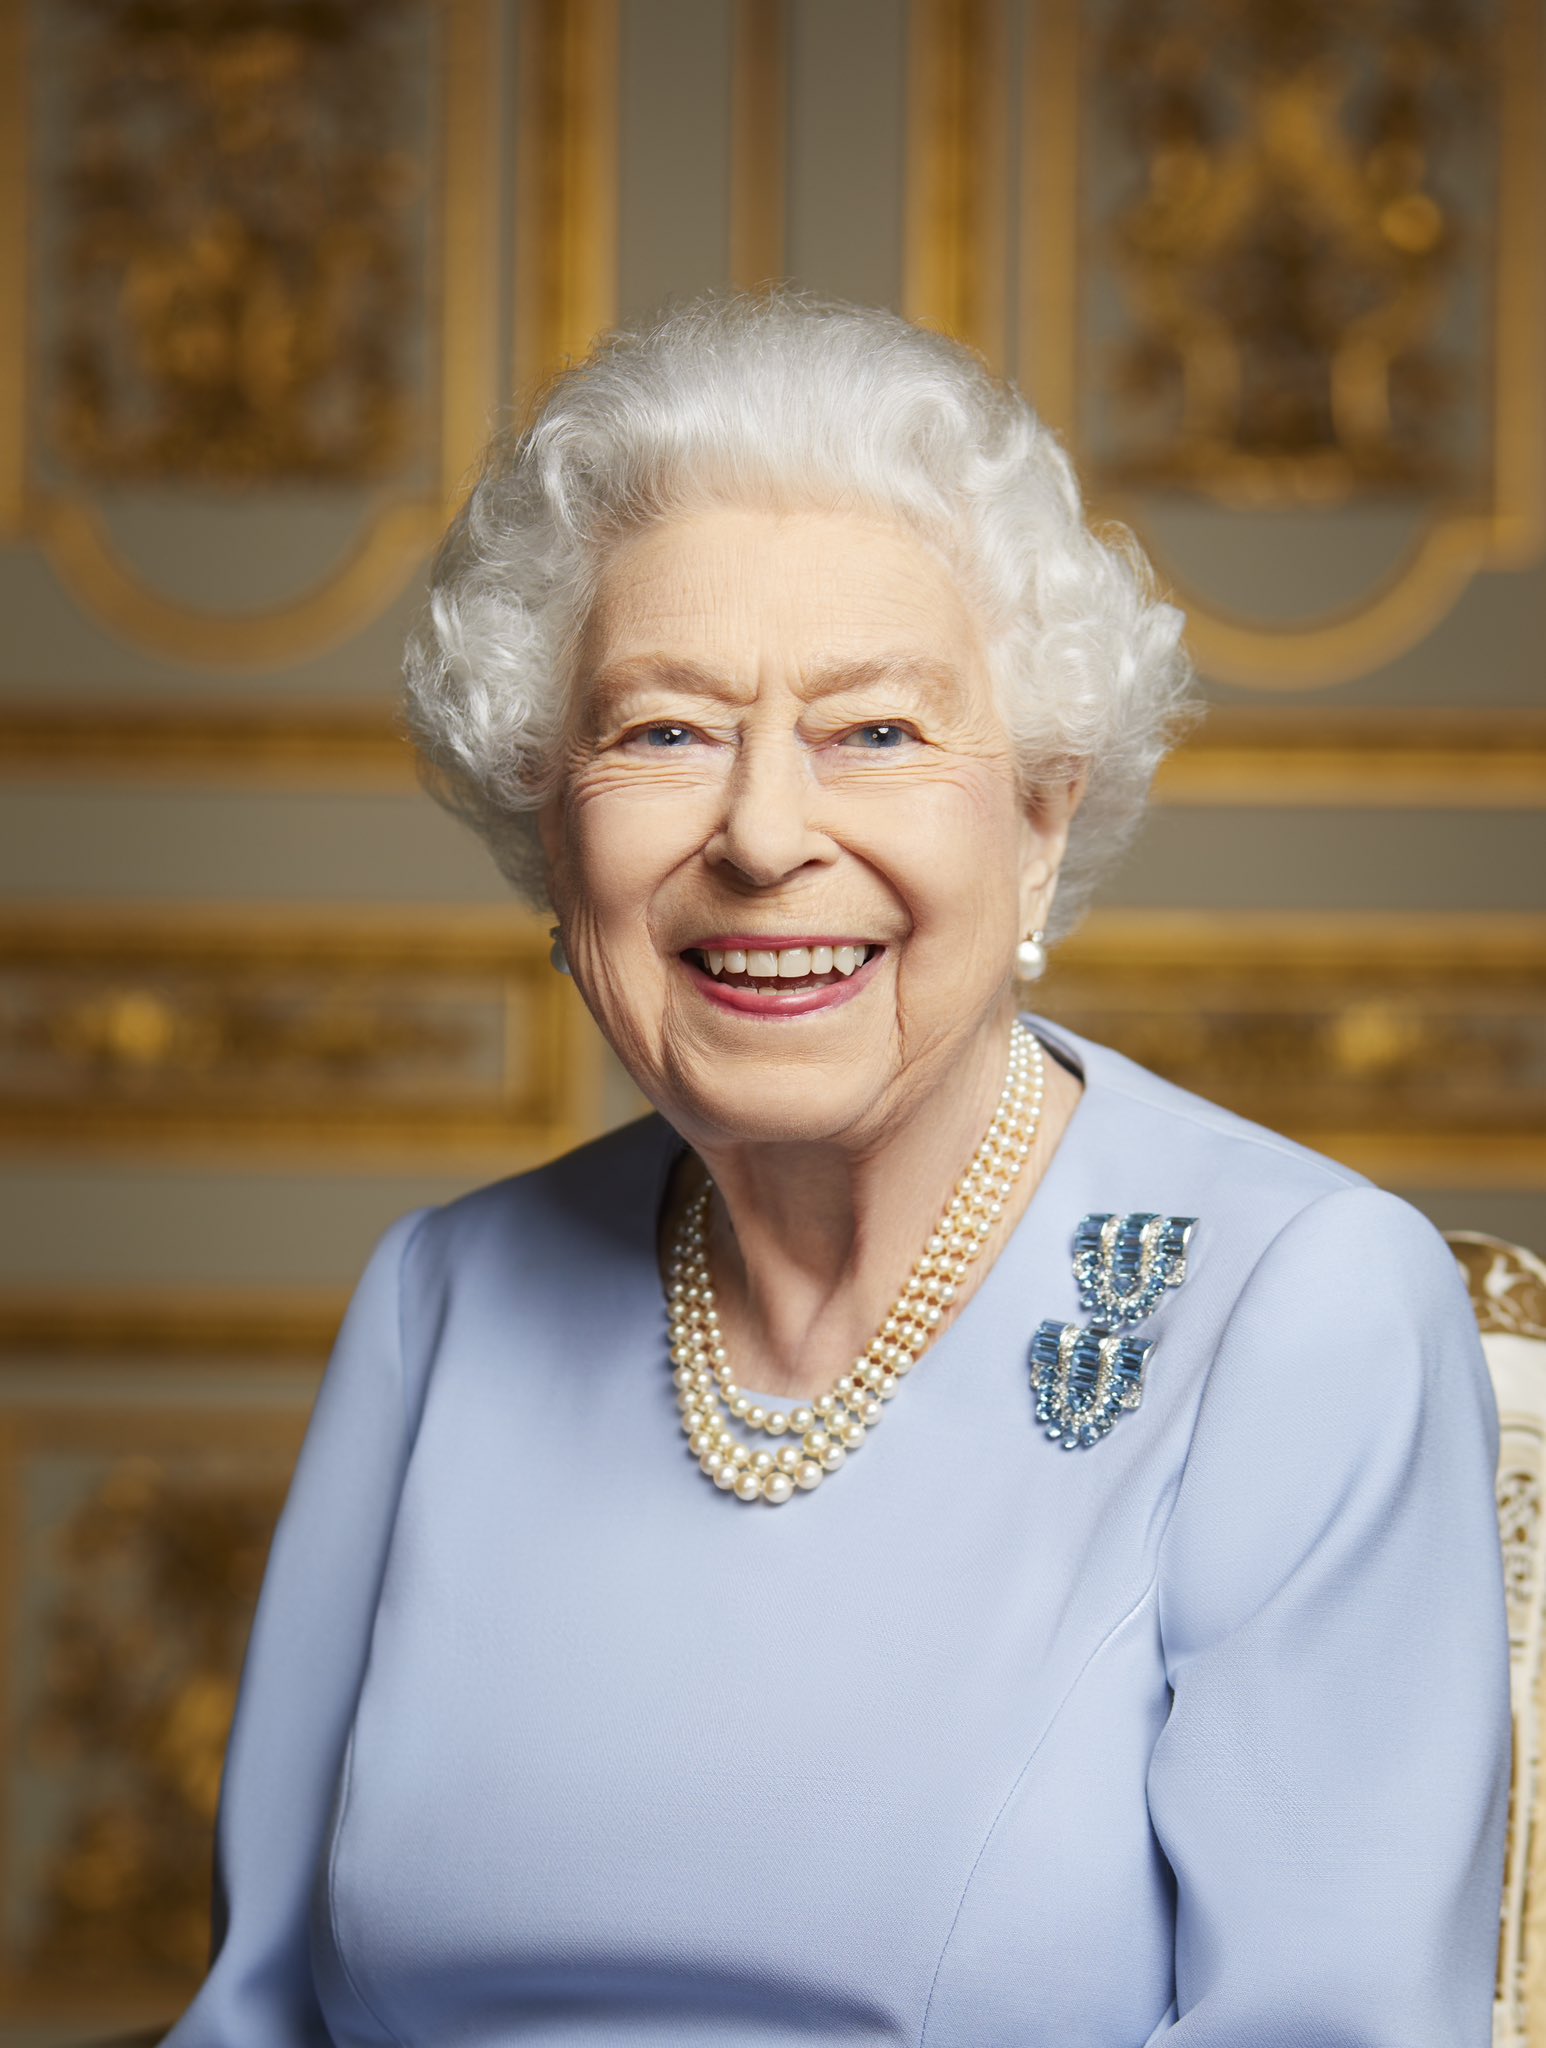 Один из последних портретов британской королевы Елизаветы II. Фото © Twitter / TheRoyalFamily, Ранальд Макечни